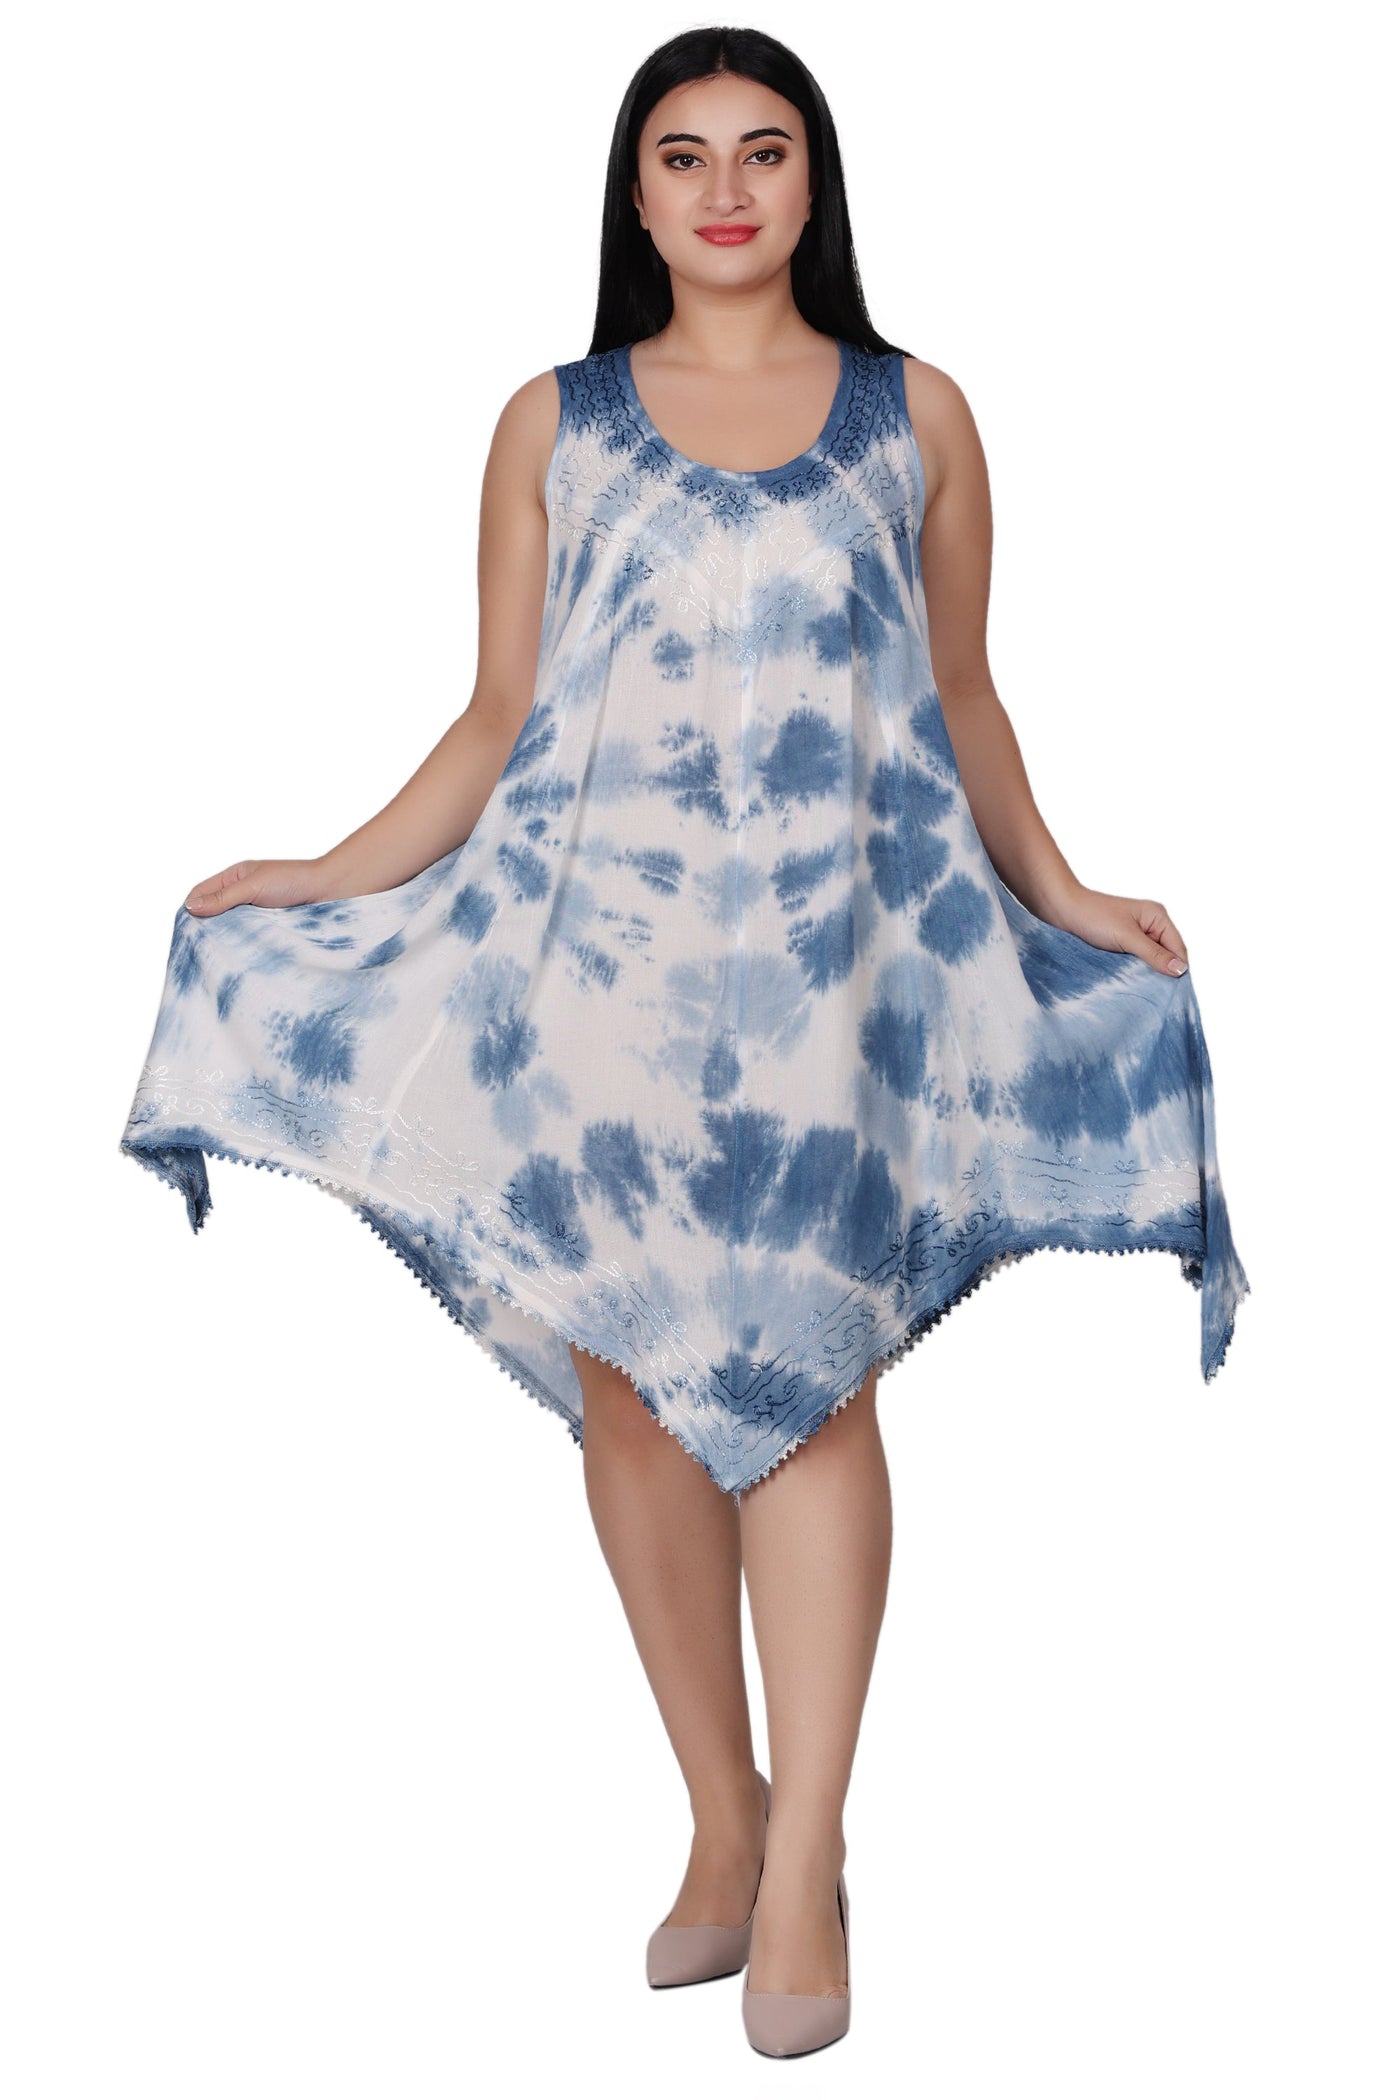 Fairytale Bottom Tie Dye Dress 422141FT